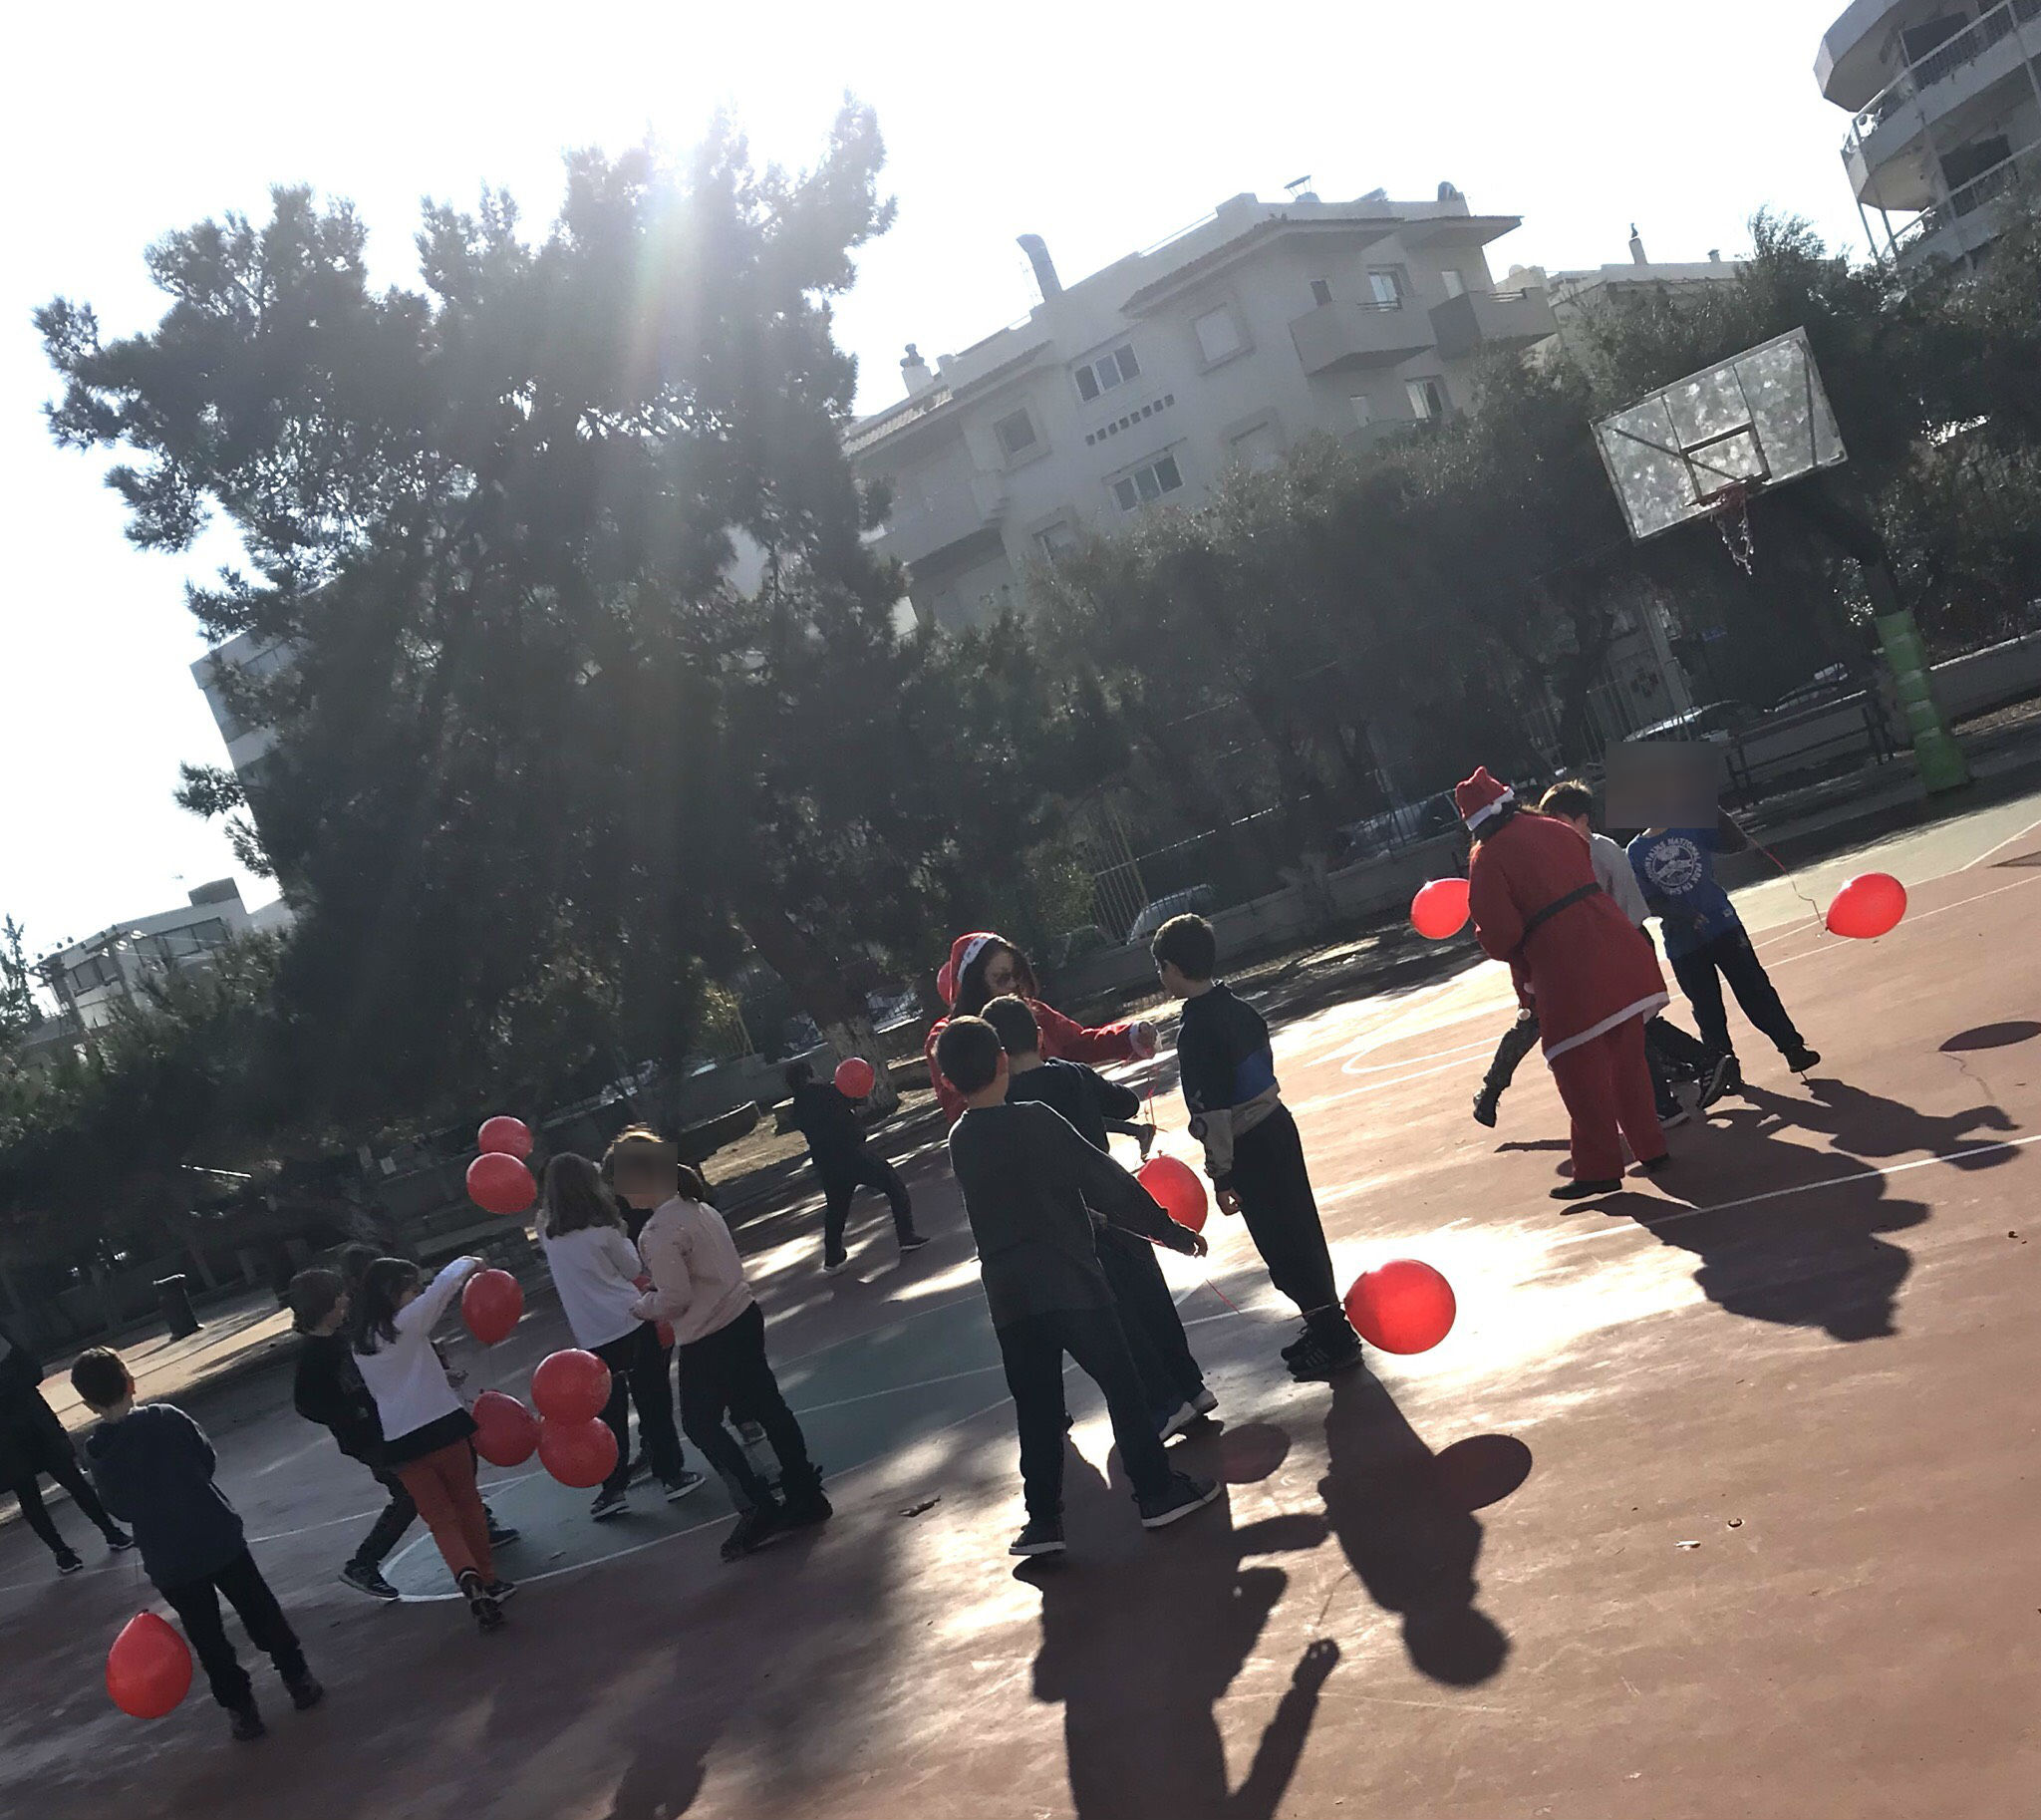 Δήμος Γλυφάδας: Το χριστουγεννιάτικο τρενάκι περνάει από τα δημοτικά σχολεία της πόλης μοιράζοντας μπαλόνια και καραμέλες στους μαθητές